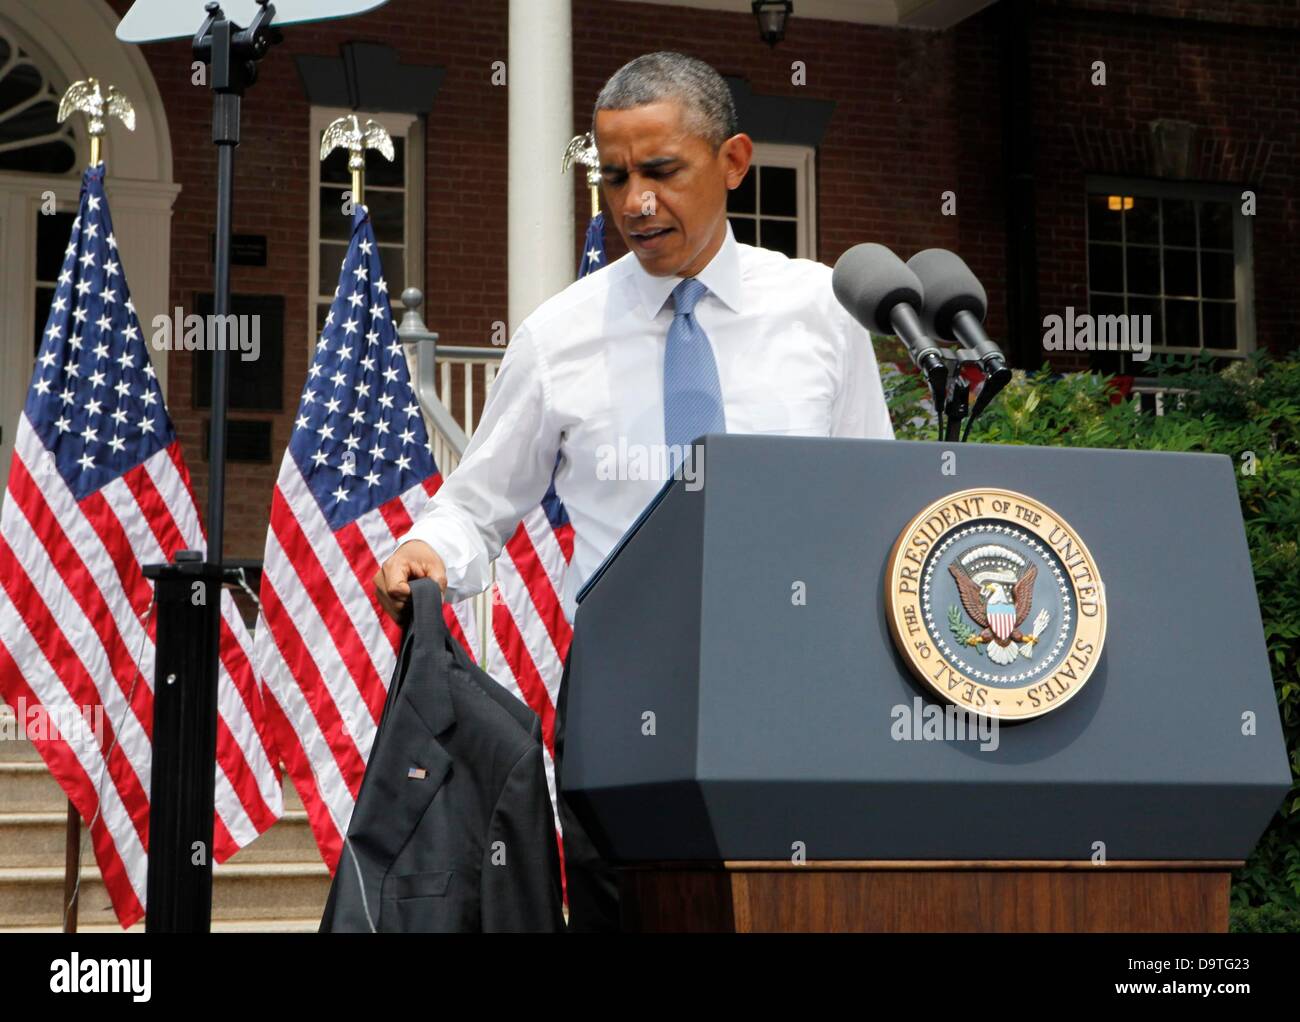 US-Präsident Barack Obama wird seinen Anzug Mantel an einem heißen Tag  bevor er eine Rede auf ein Klimawandel an der Georgetown University,  Washington DC, Dienstag, 25. Juni 2013 entfernt. Bildnachweis: Dennis Brack  /